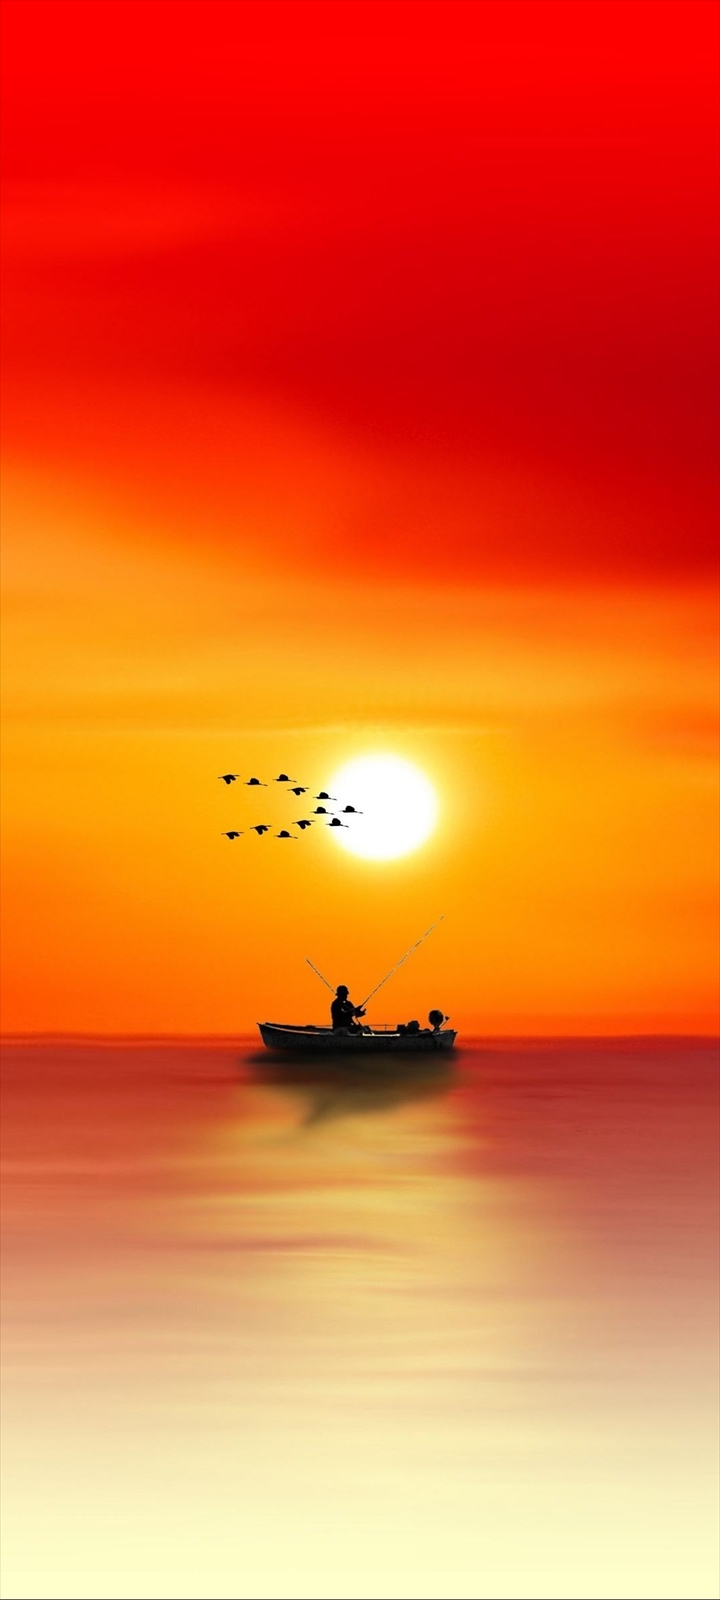 ボートで釣りをする人と渡り鳥と夕日 Moto G8 Power Lite Androidスマホ壁紙 待ち受け スマラン